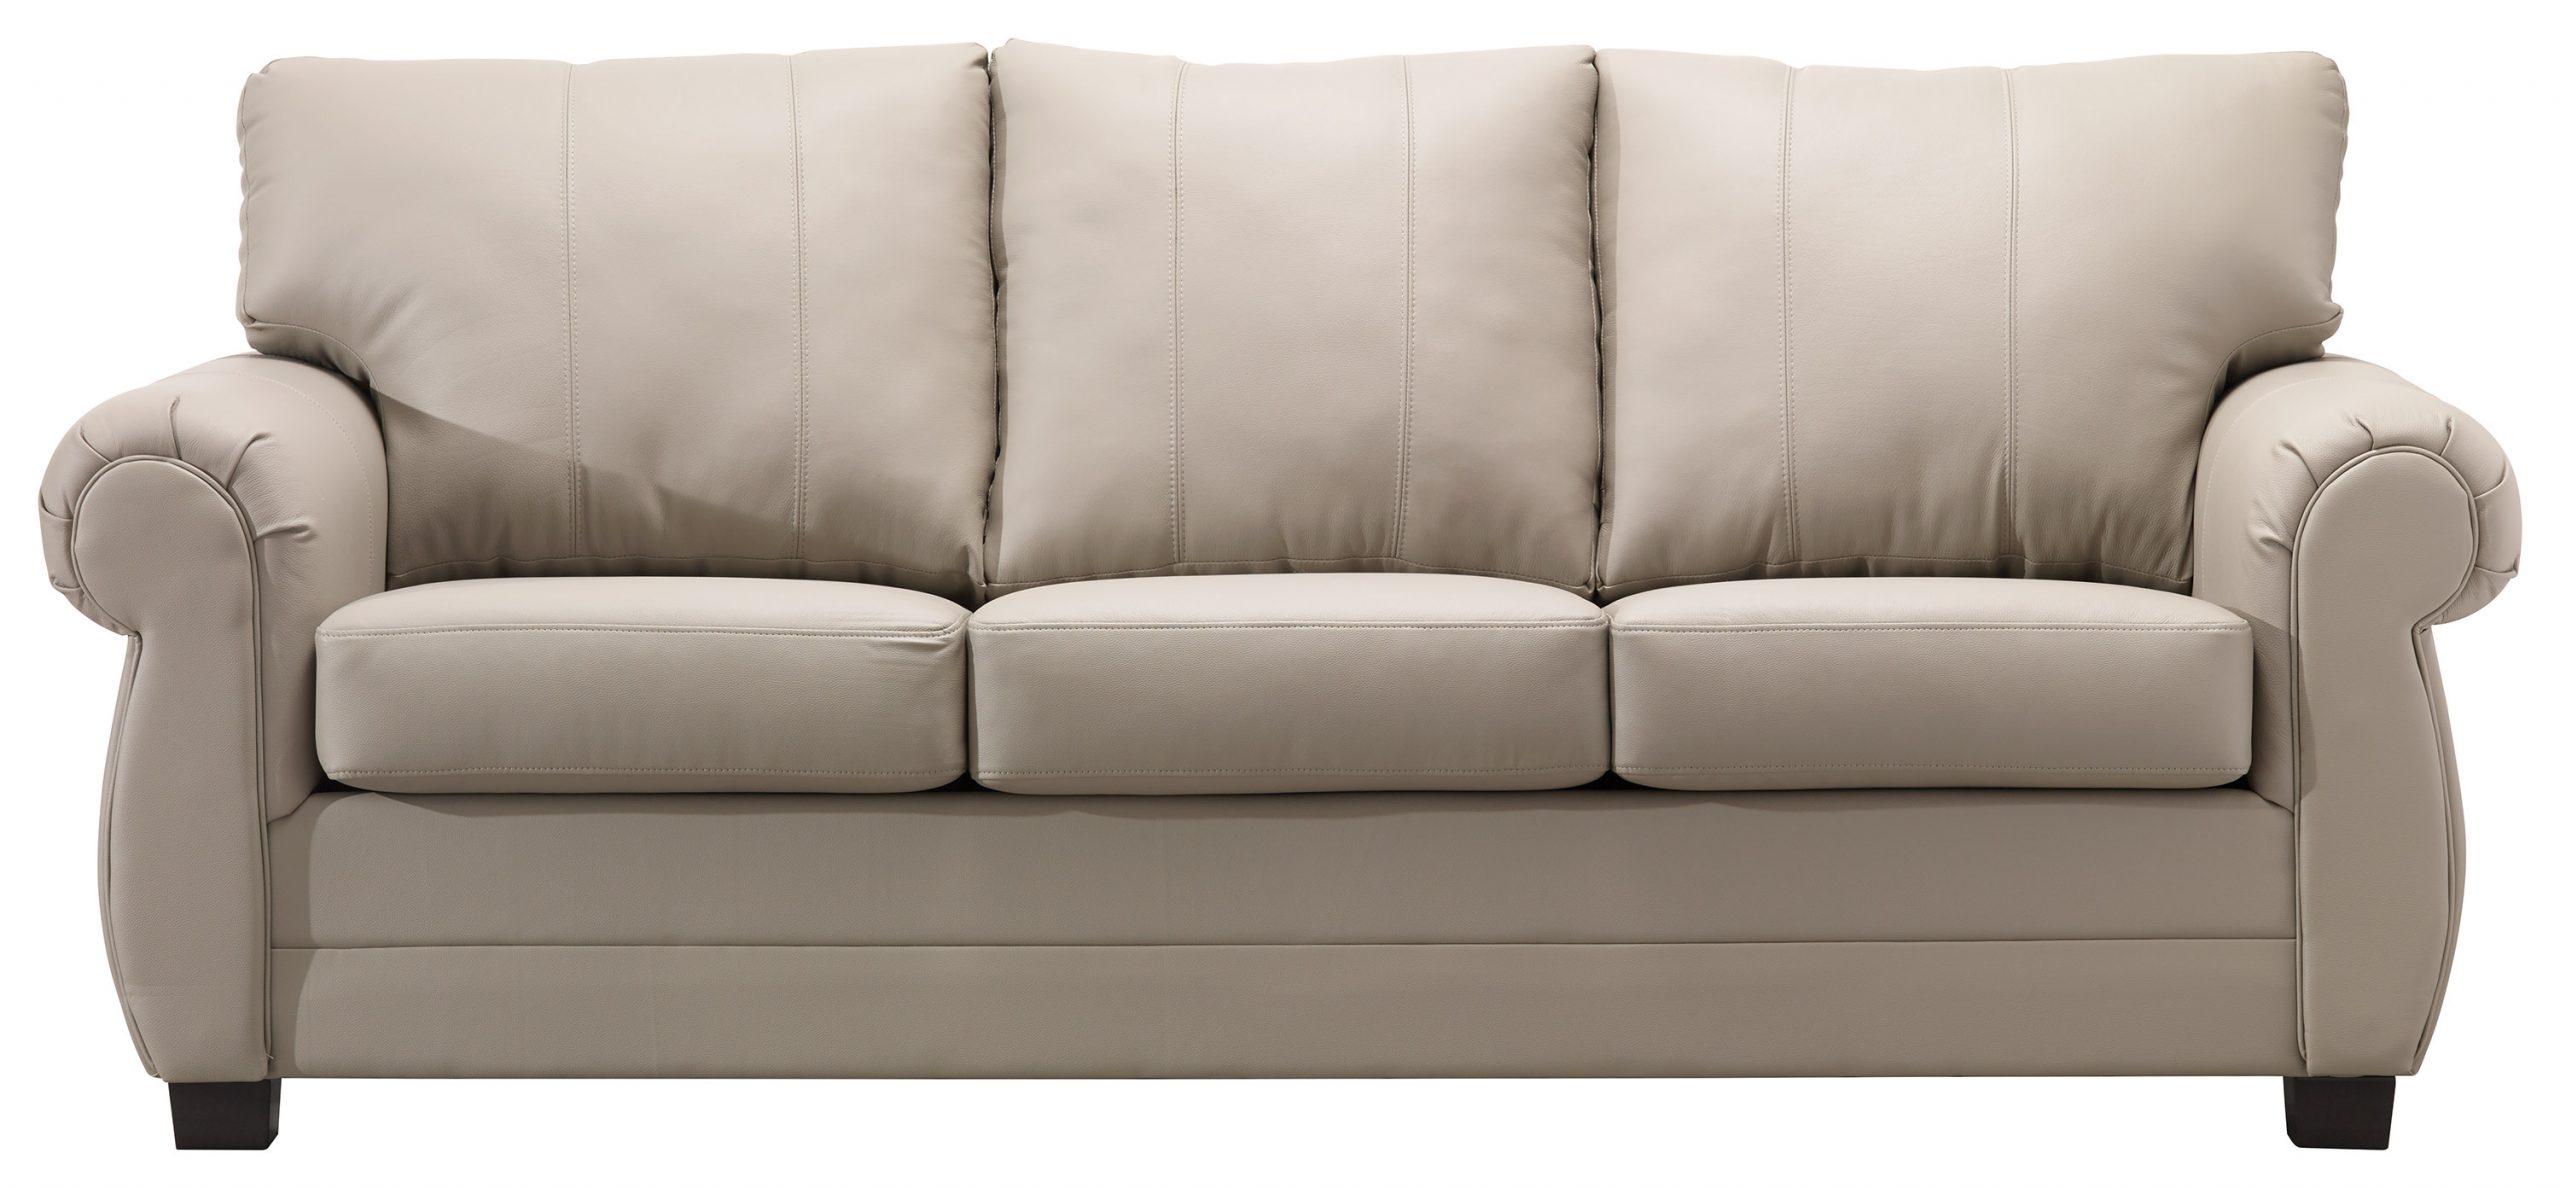 ikea gray leather sofa